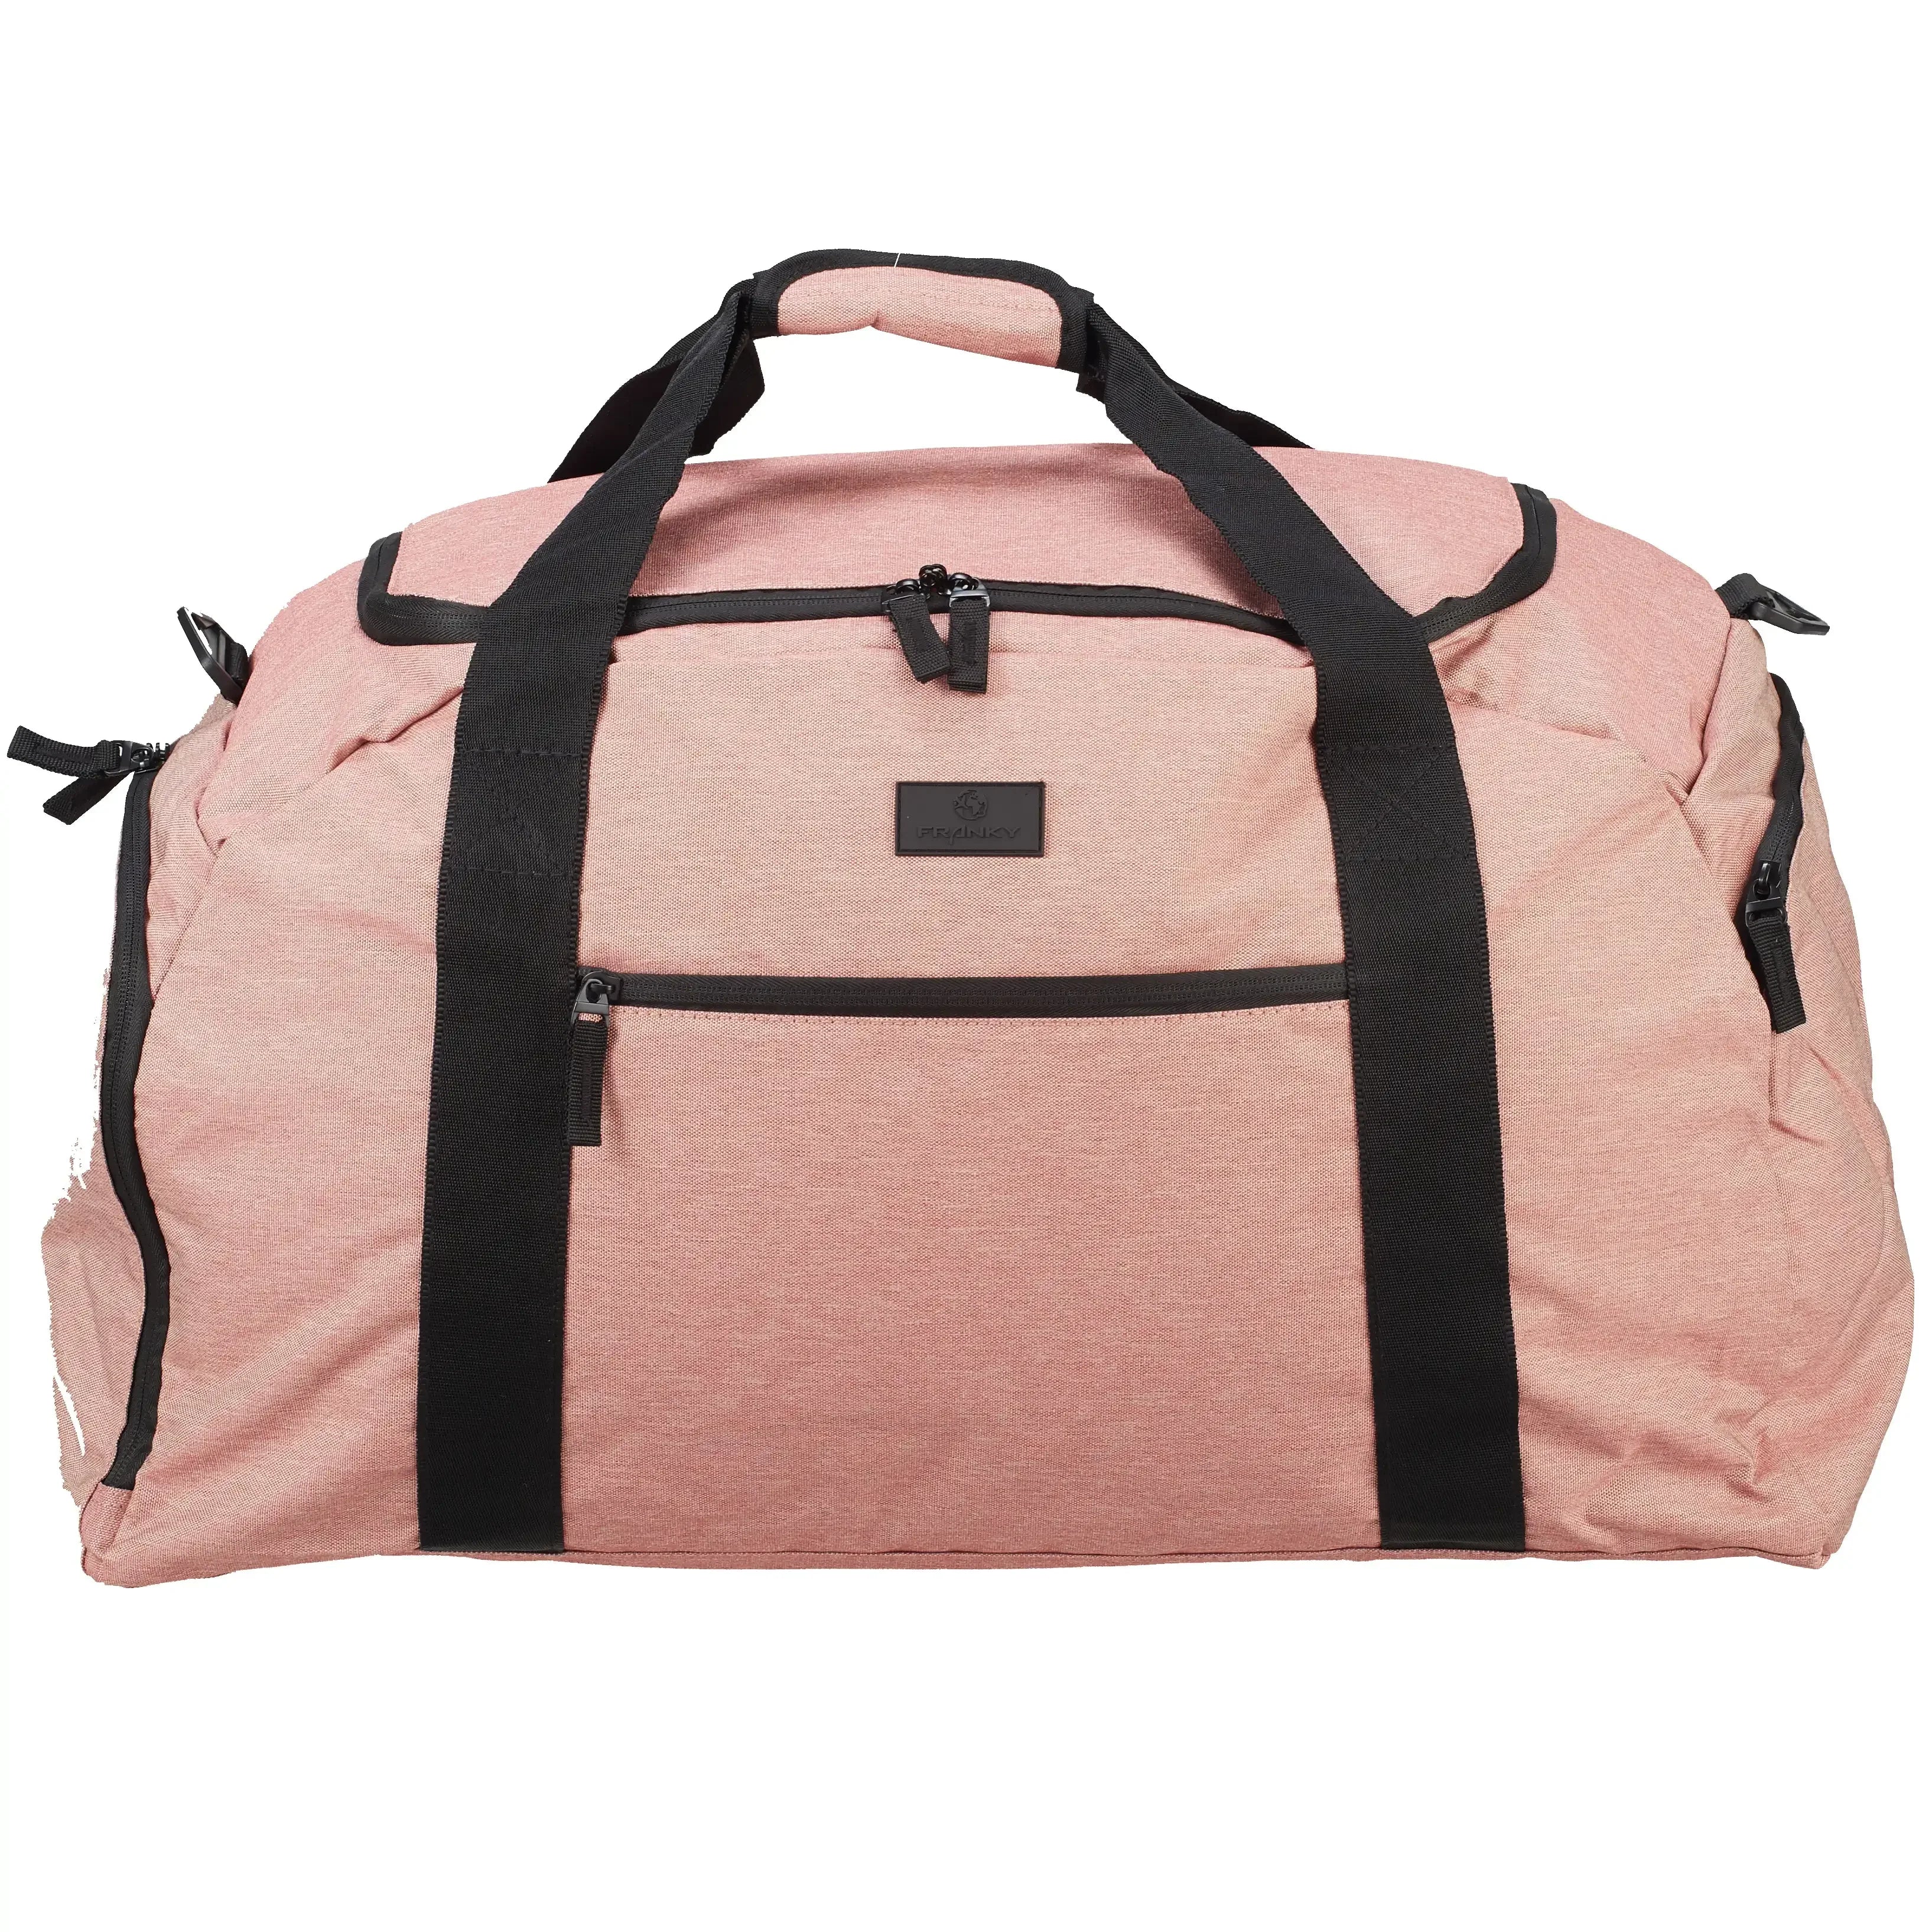 koffer-direkt.de Travel bag L 62 cm - rose